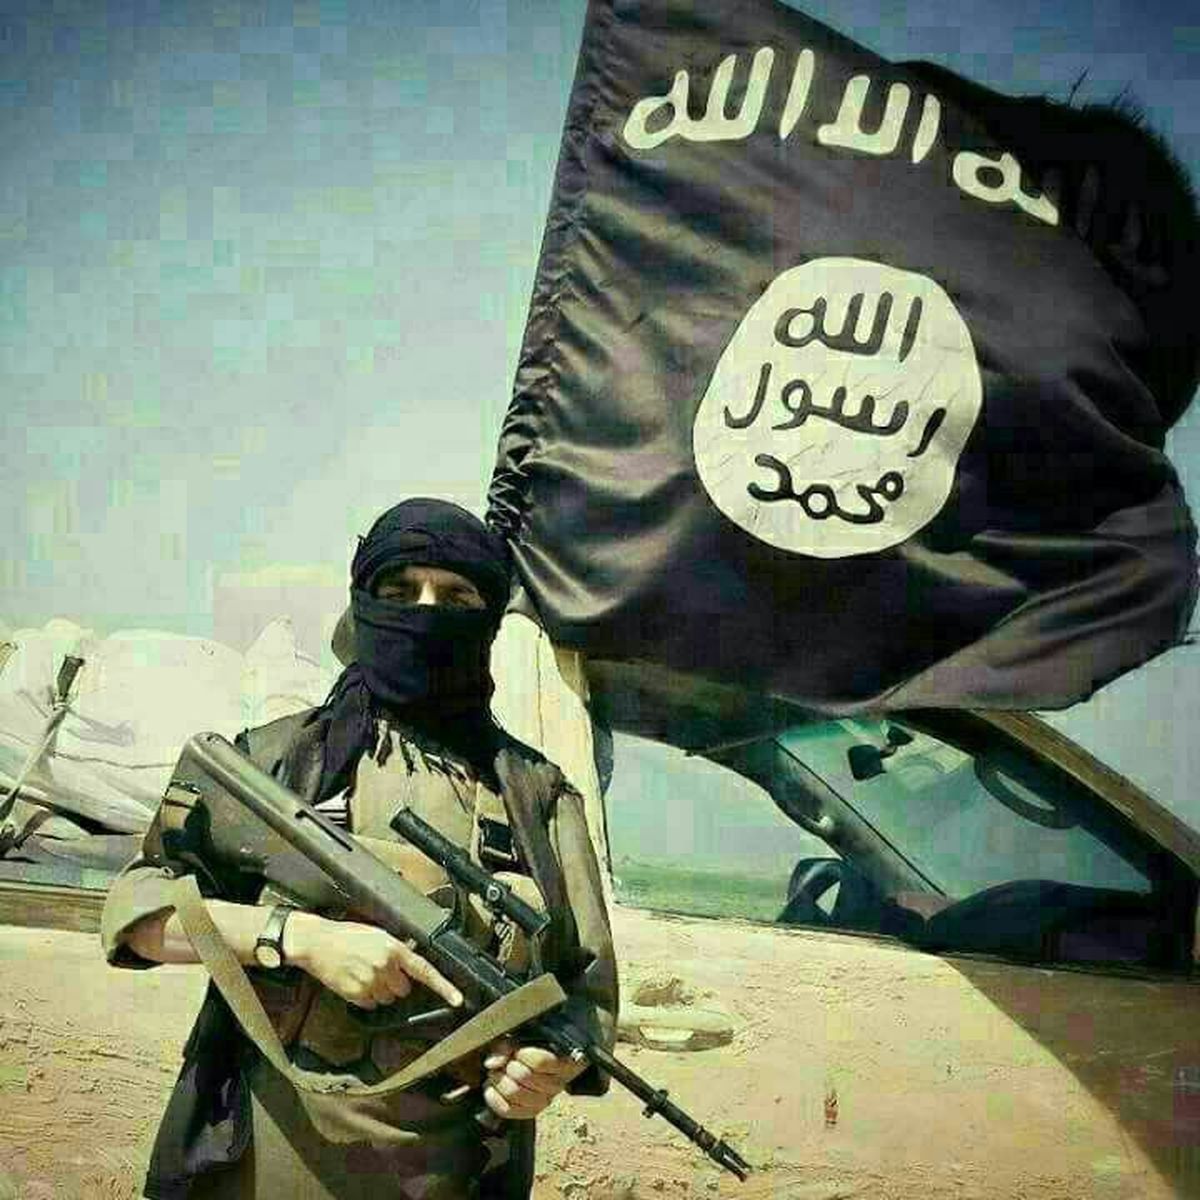 داعش عبور و مرور در رقه را ممنوع کرد